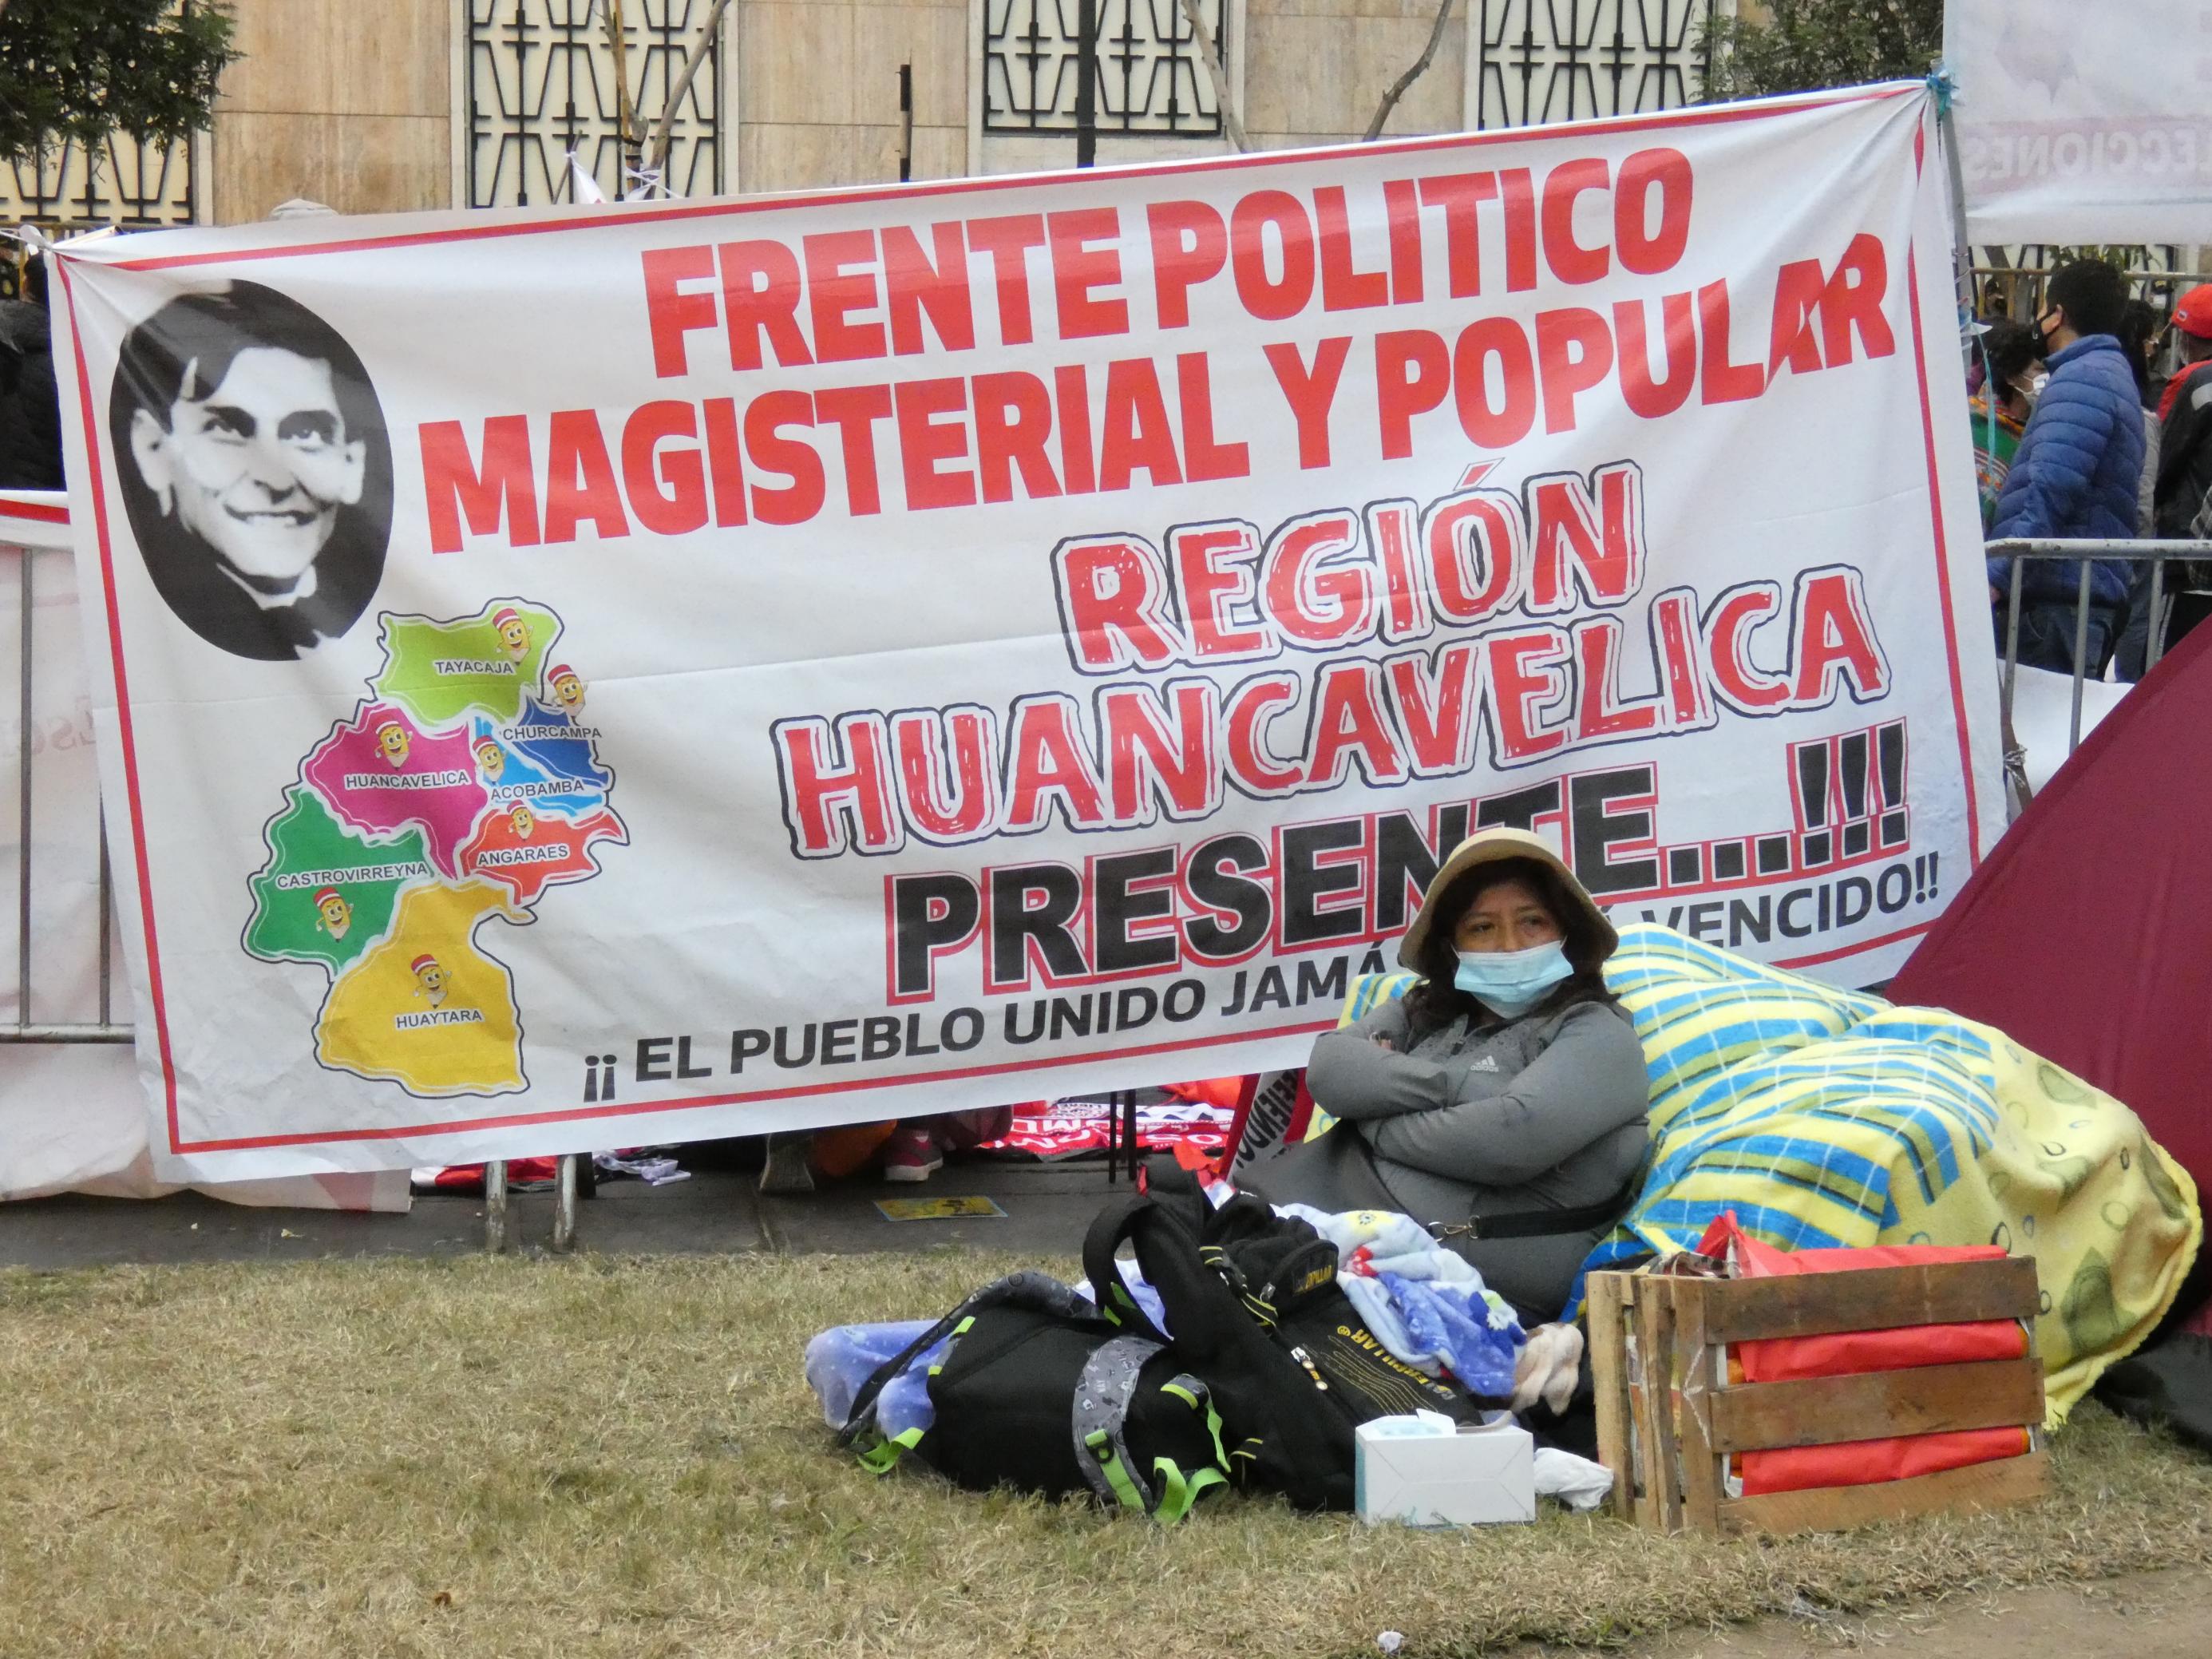 Ein großes Plakat mit der spanischen Aufschrift der Lehrergewerkschaft; davor sitzt eine Person mit viel Gepäck auf dem Rasen.